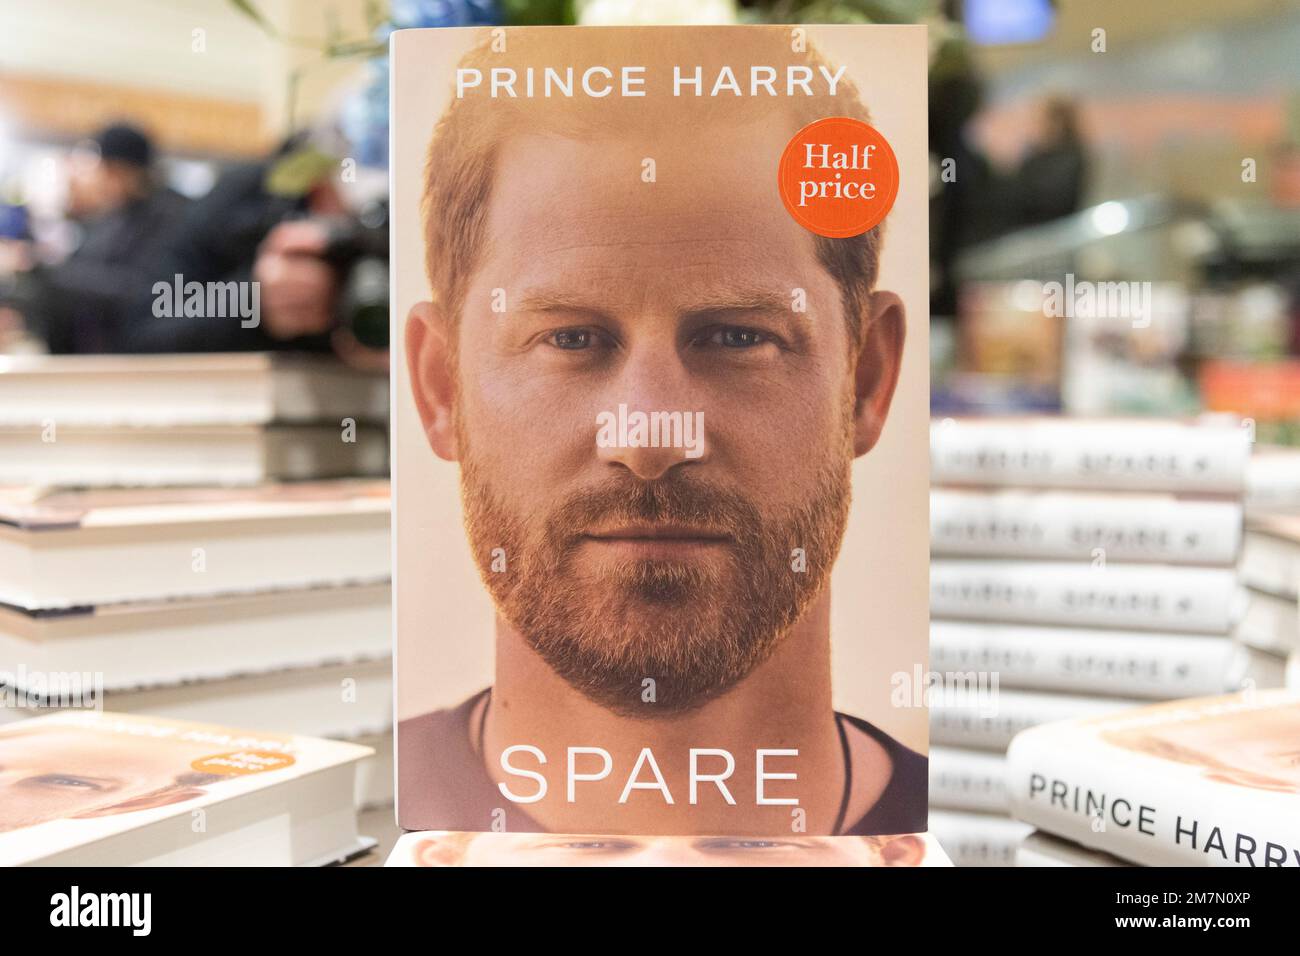 10 gennaio 2023. Londra, Regno Unito. Copie dell'autobiografia Prince Harry "Spare" sono oggi in vendita presso il negozio di libri Waterstones Piccadilly. Foto di Ray Tang Foto Stock